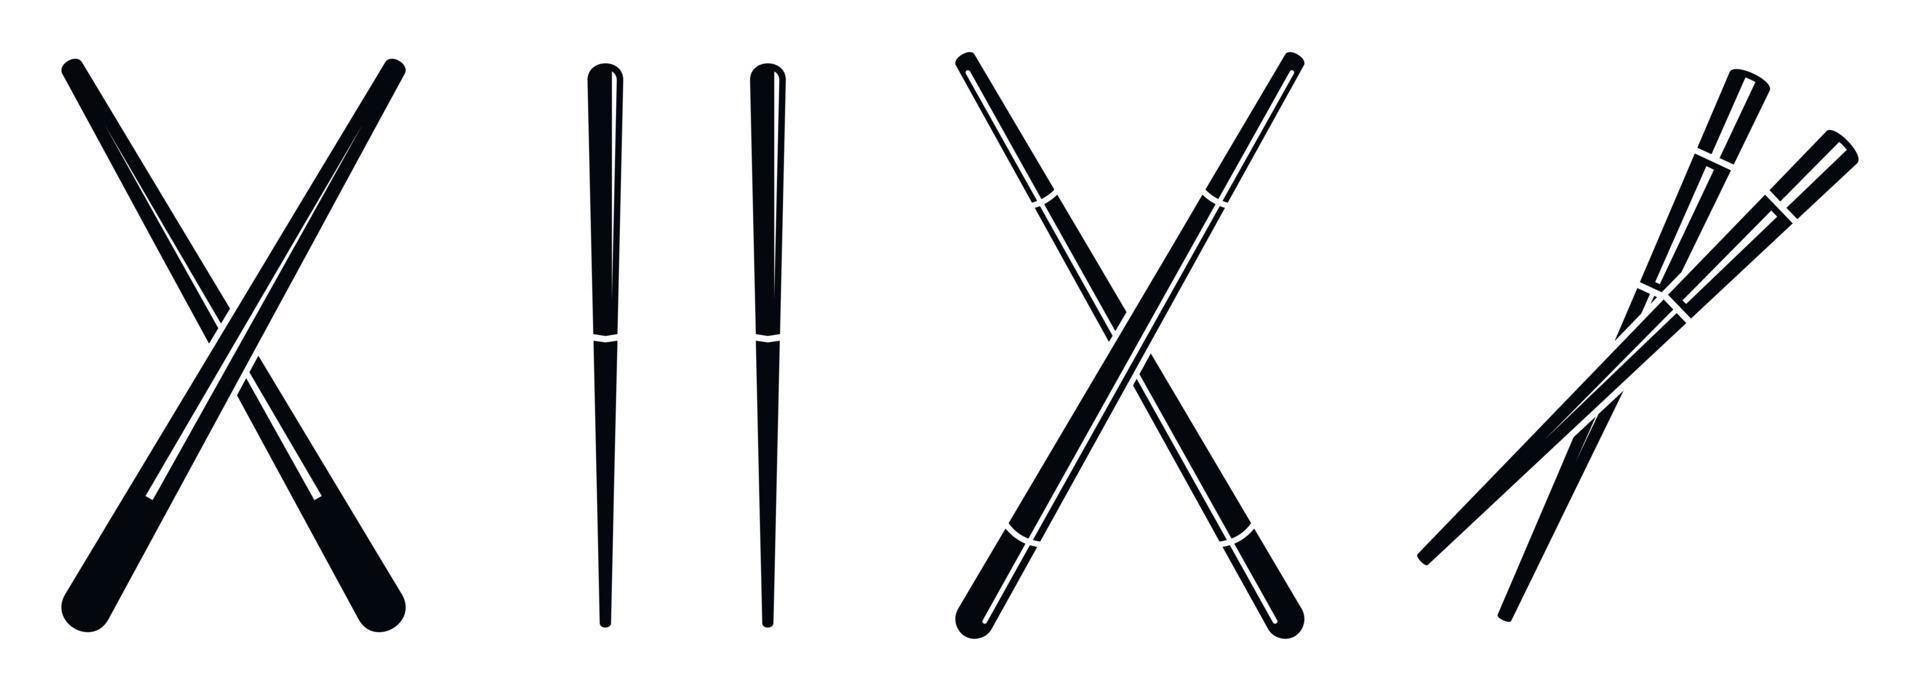 conjunto de iconos de palillos japoneses, estilo simple vector